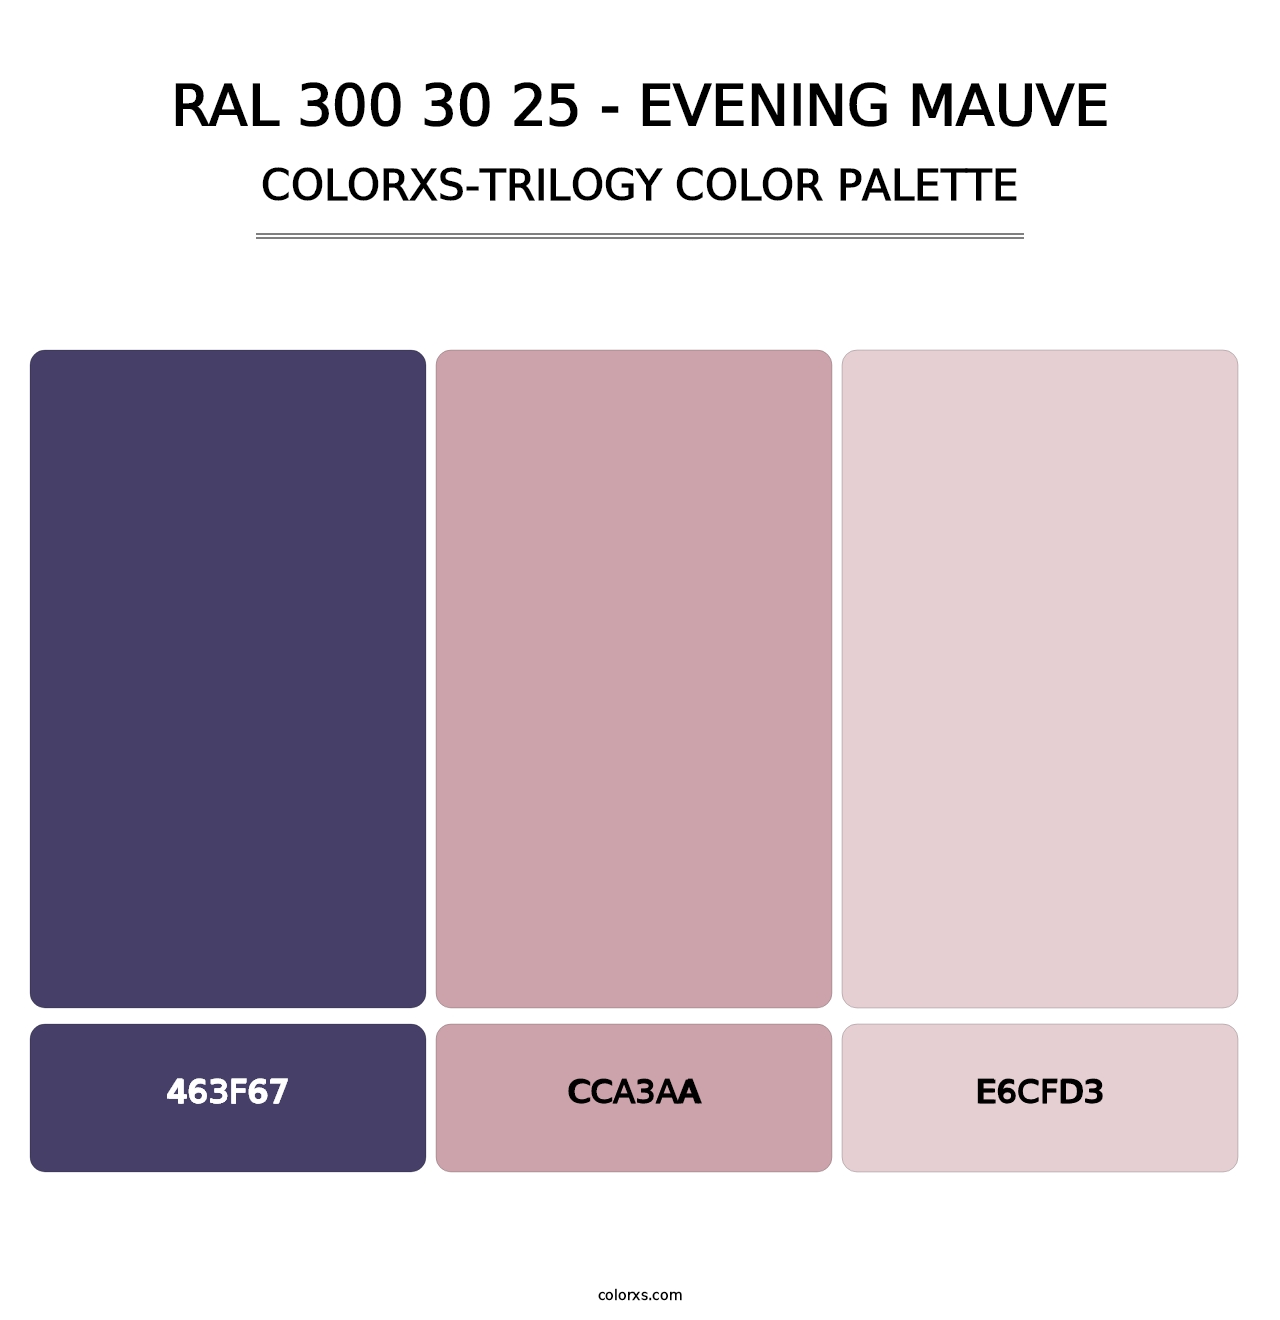 RAL 300 30 25 - Evening Mauve - Colorxs Trilogy Palette